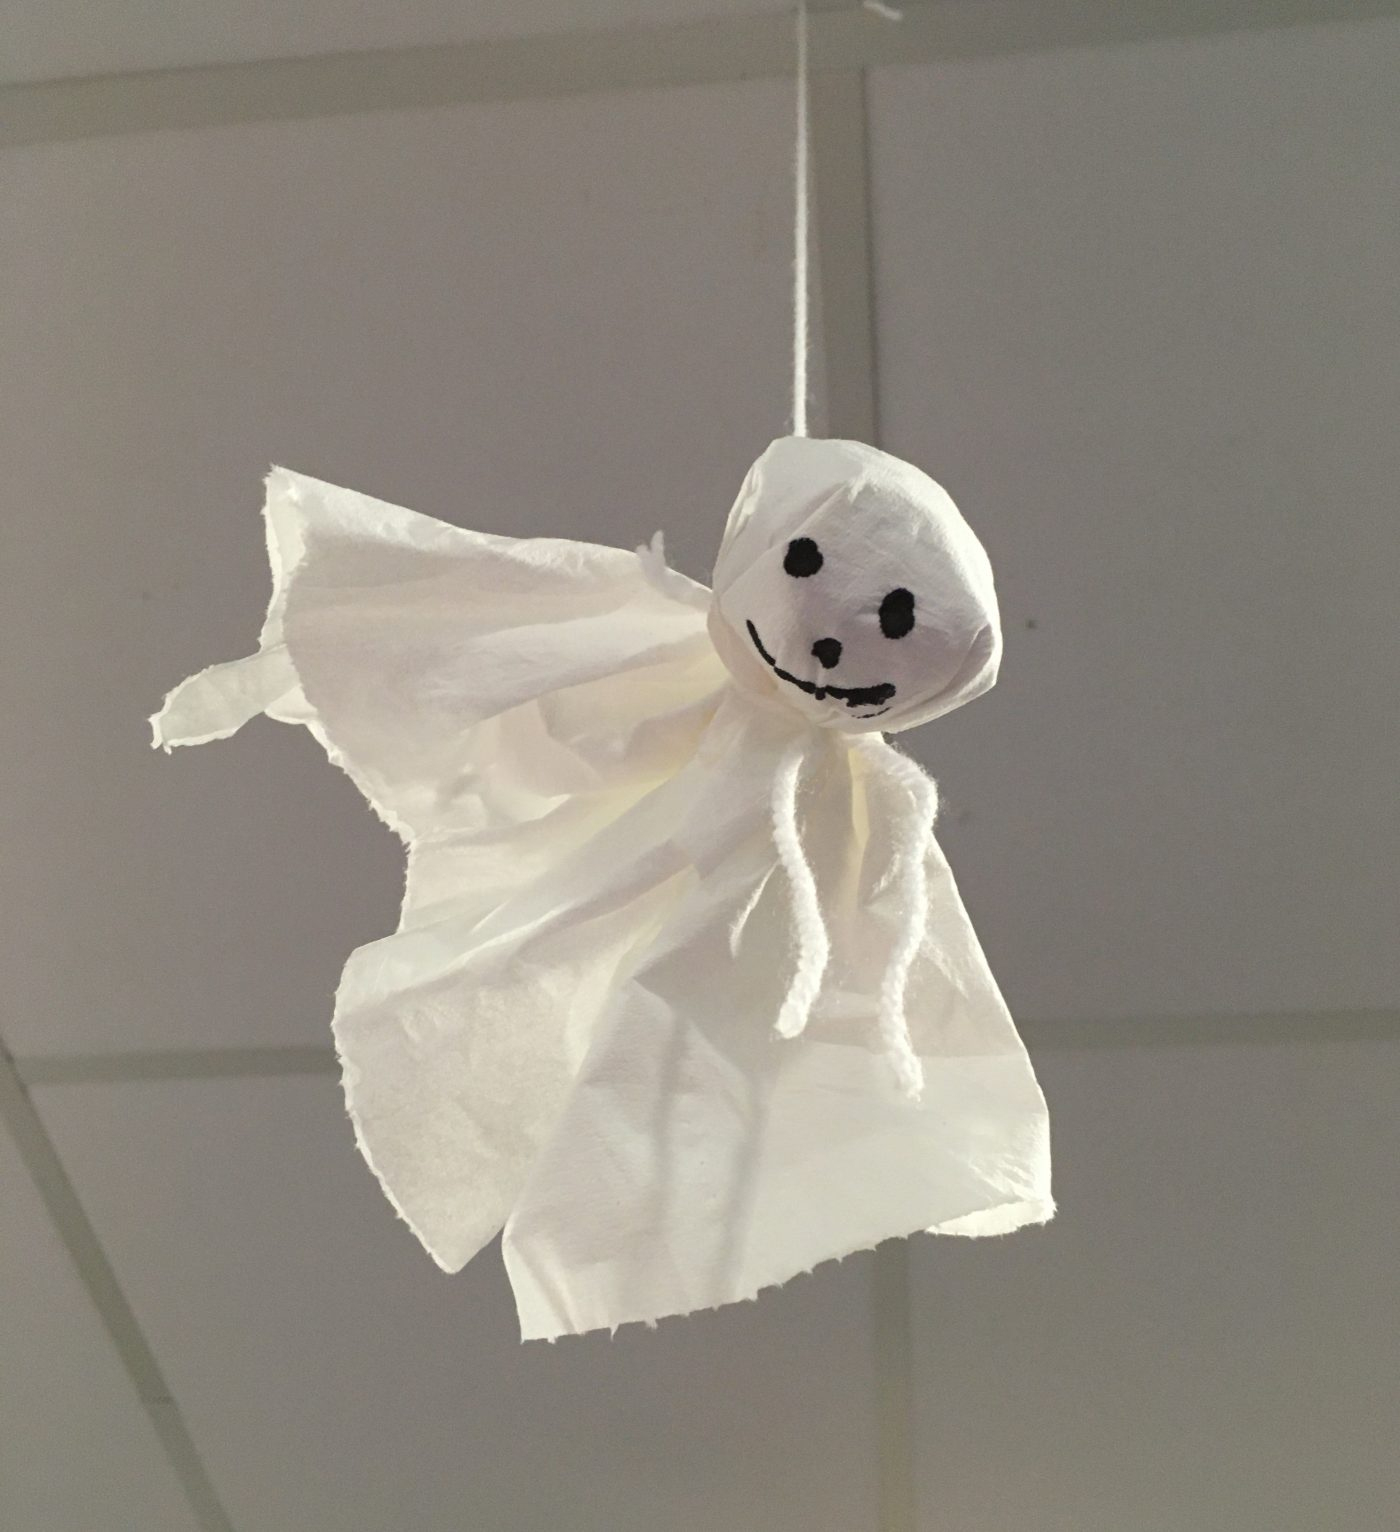 Une Décoration D'Enfer D'Halloween : Fantôme À Suspendre ! (Blog Zôdio) tout Fantome Halloween